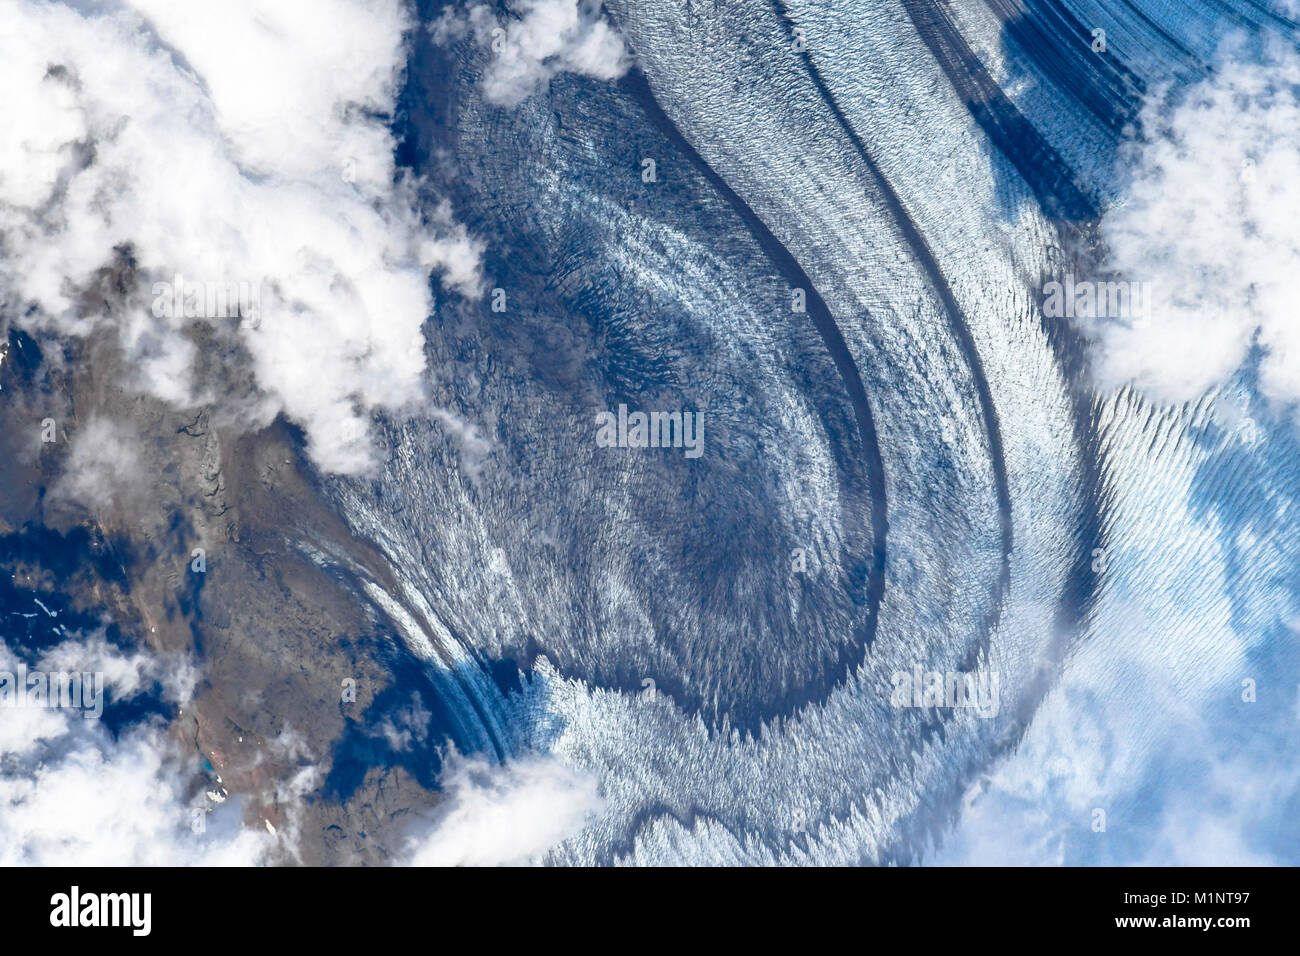 Impressionante i motivi, le forme e le texture del pianeta terra visto dallo spazio. Questo elementi di immagine fornita dalla NASA Foto Stock